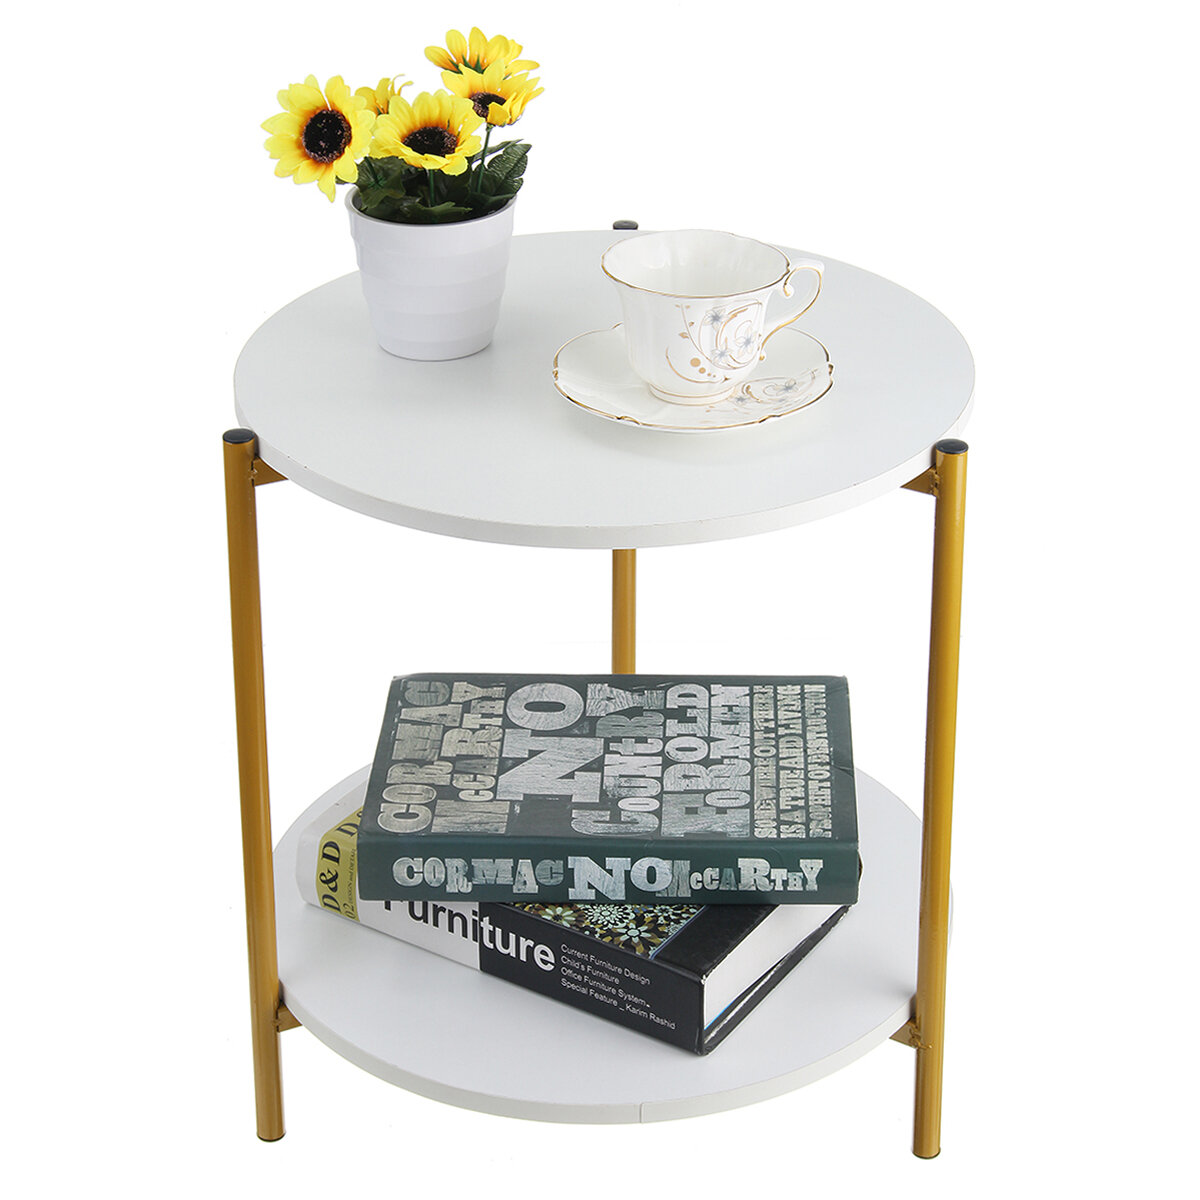 Moderne salontafel in eenvoudige stijl Corrosiebestendig Eenvoudig te reinigen nachtkastje voor mont